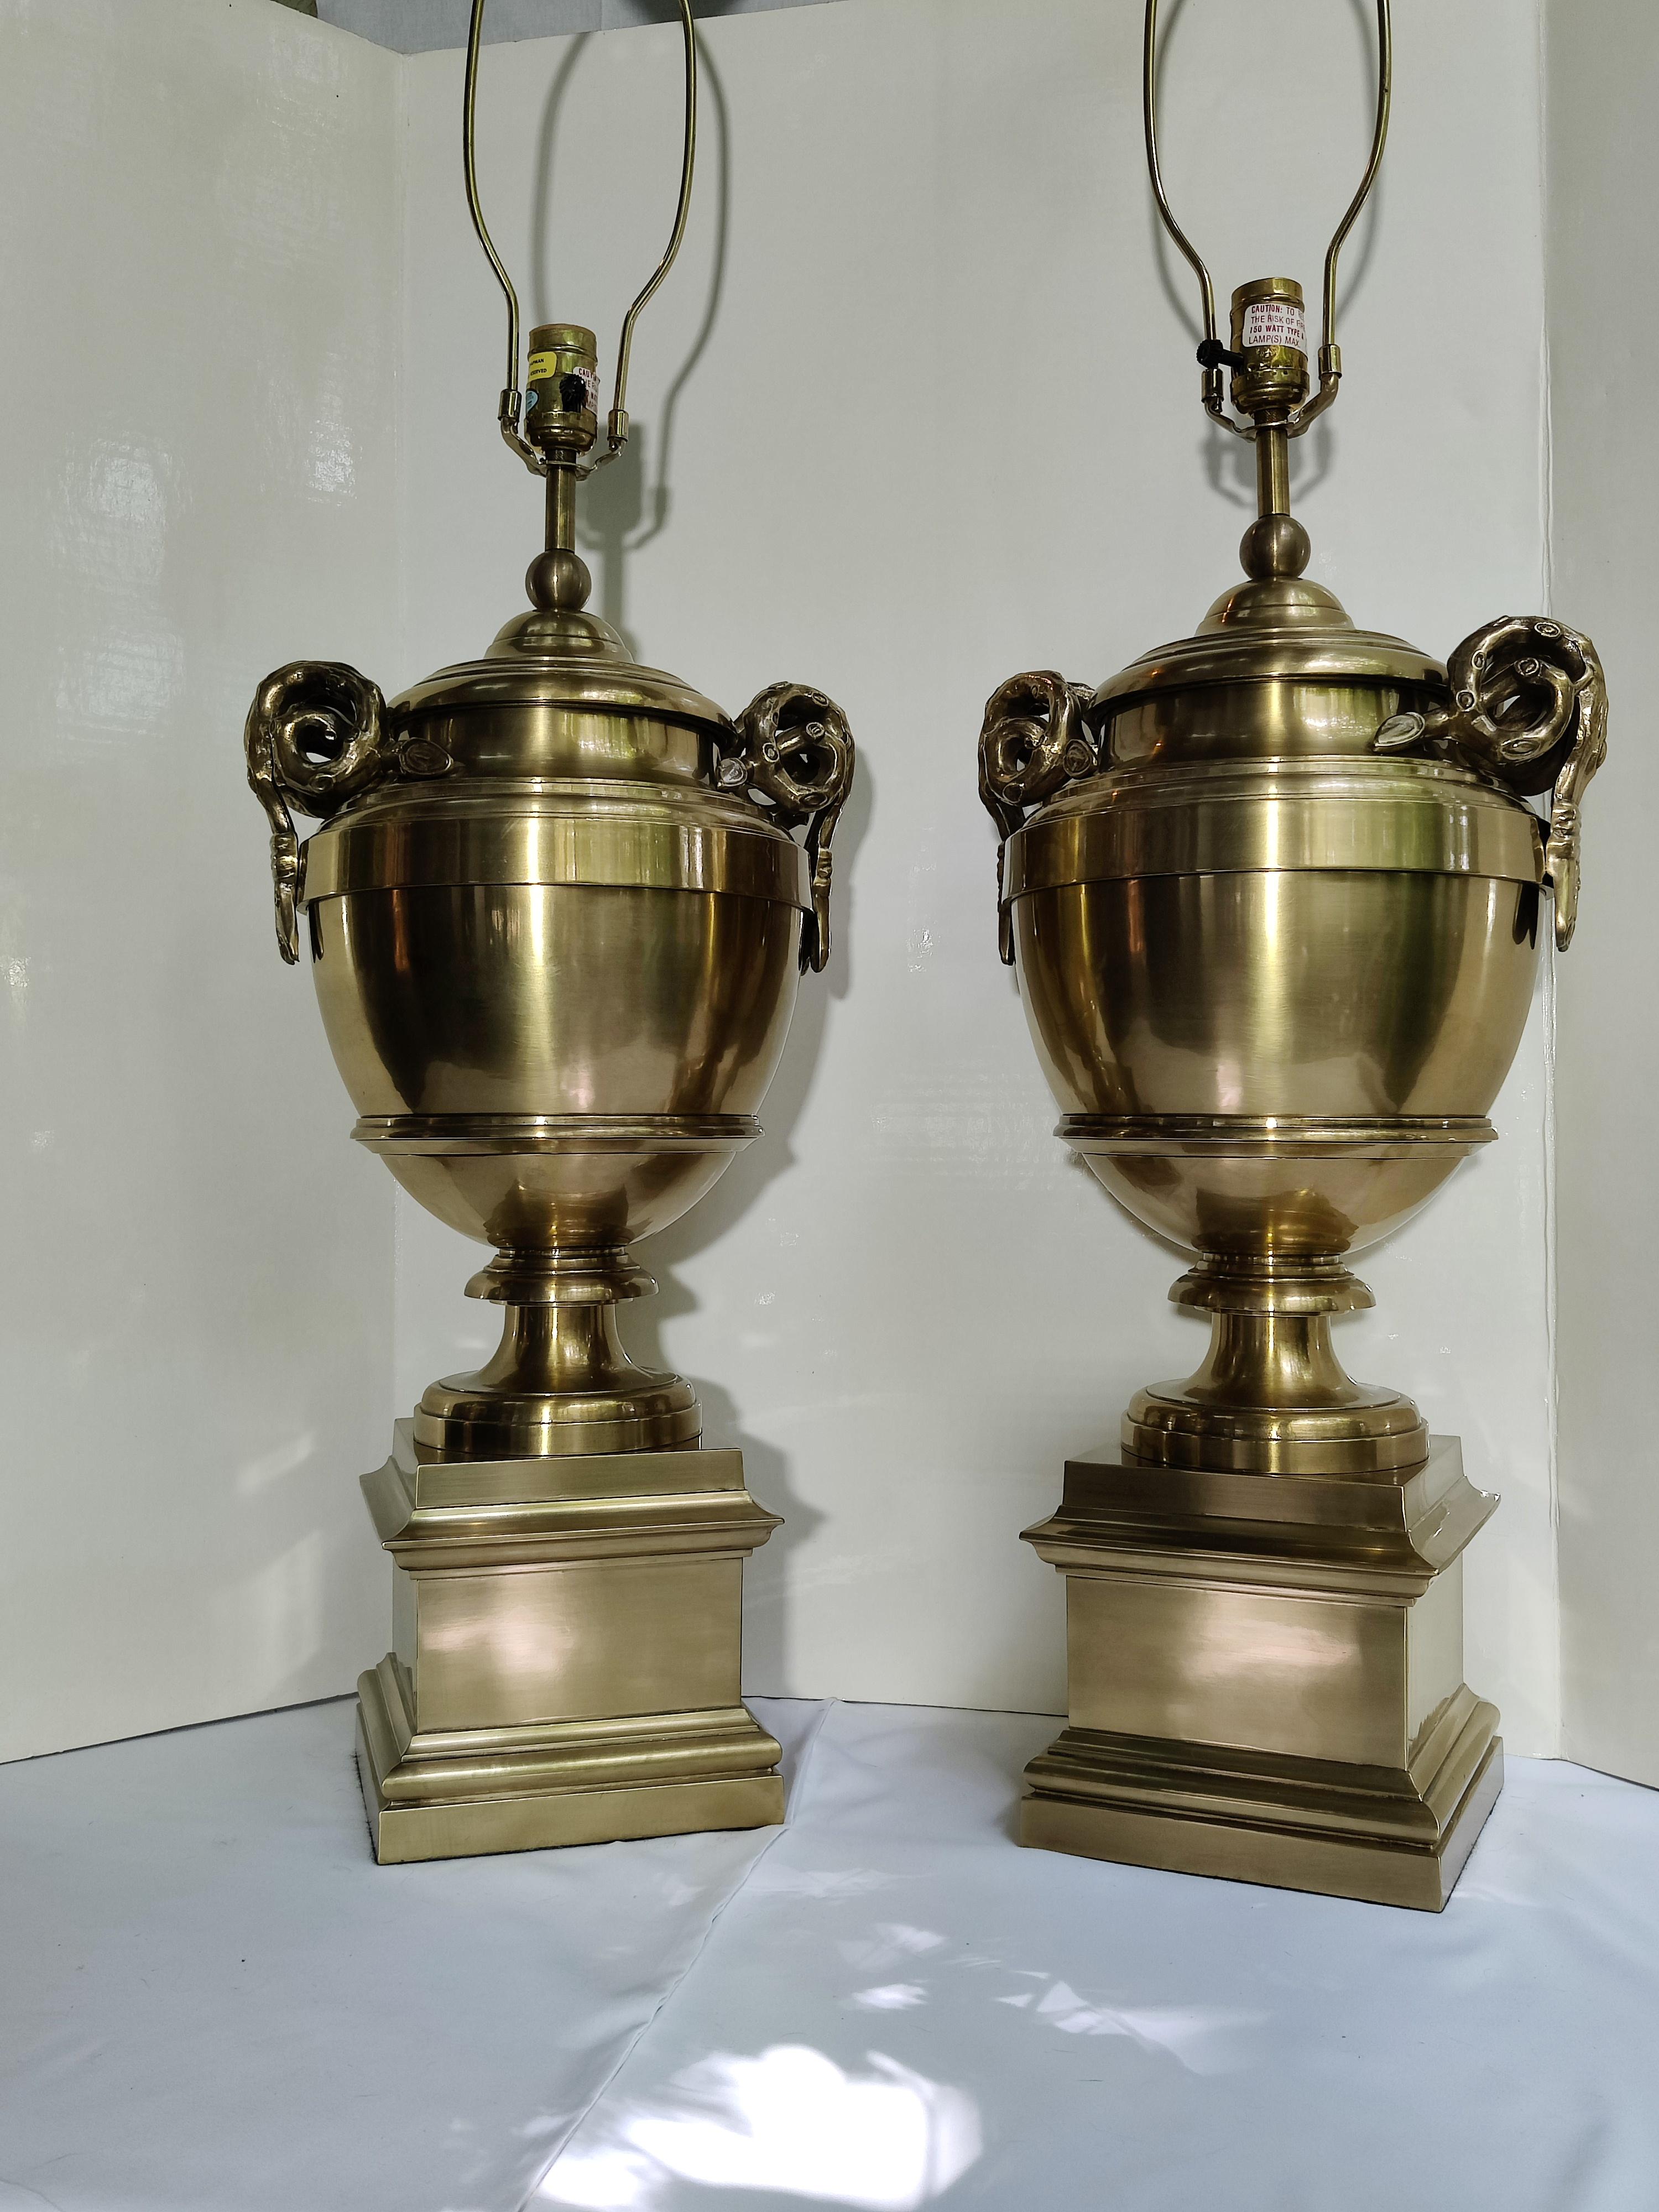 Paar schwere Messing Chapman Urn Ram Horn Tischlampen
Original große Messing-Finials
Horn zu Horn ist 11